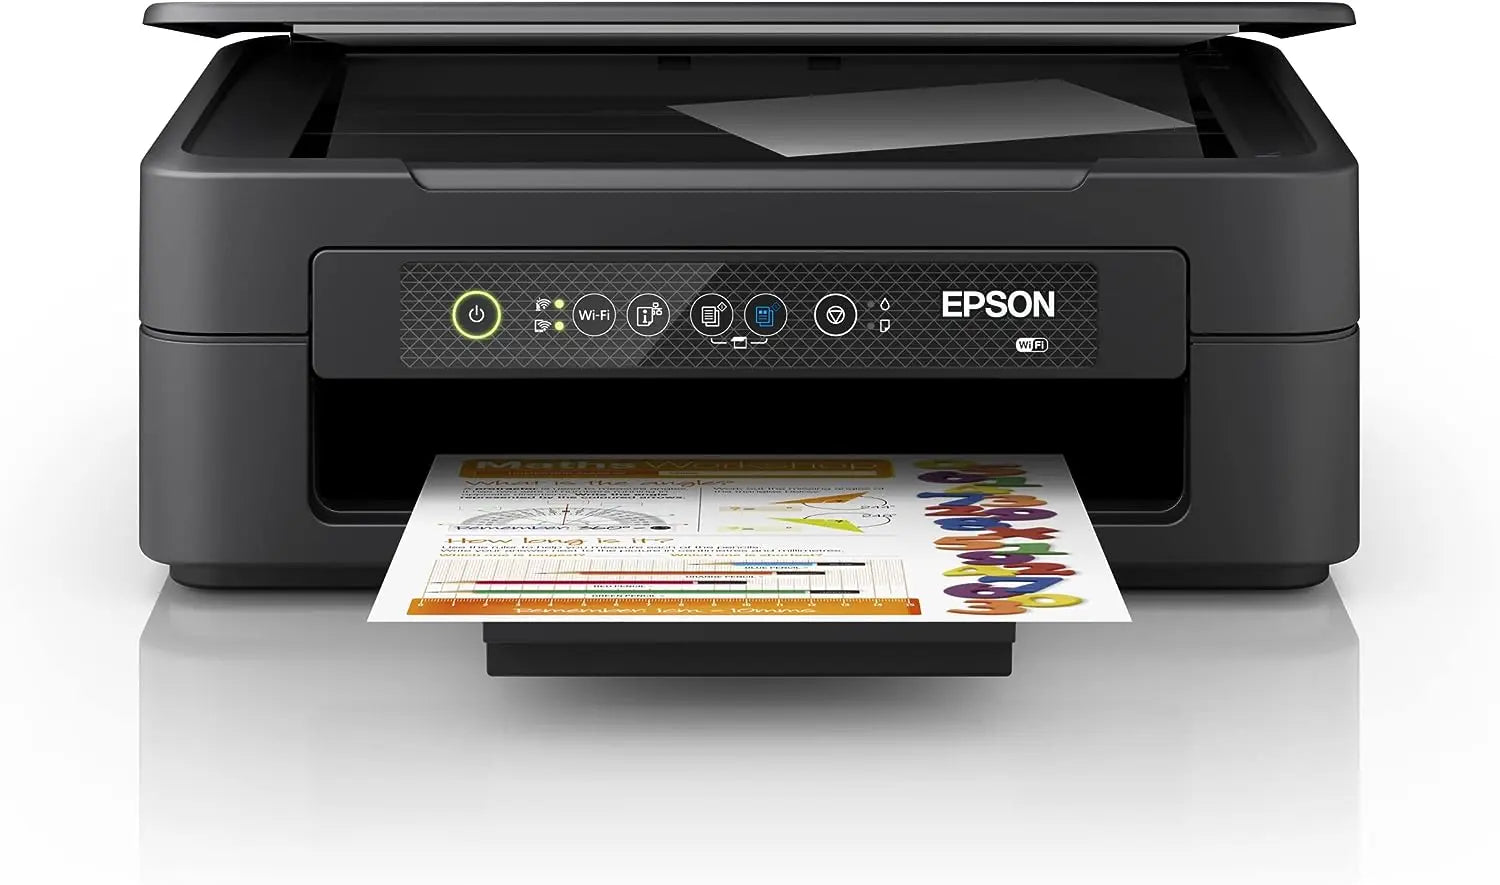 Epson Imprimante Expression Home XP-2200, Multifonction 3-en-1 : Scanner/Copieur, A4, Jet d'encre Couleur, WiFi Direct, Cartouches séparées, Ultra-Compact Souqqy